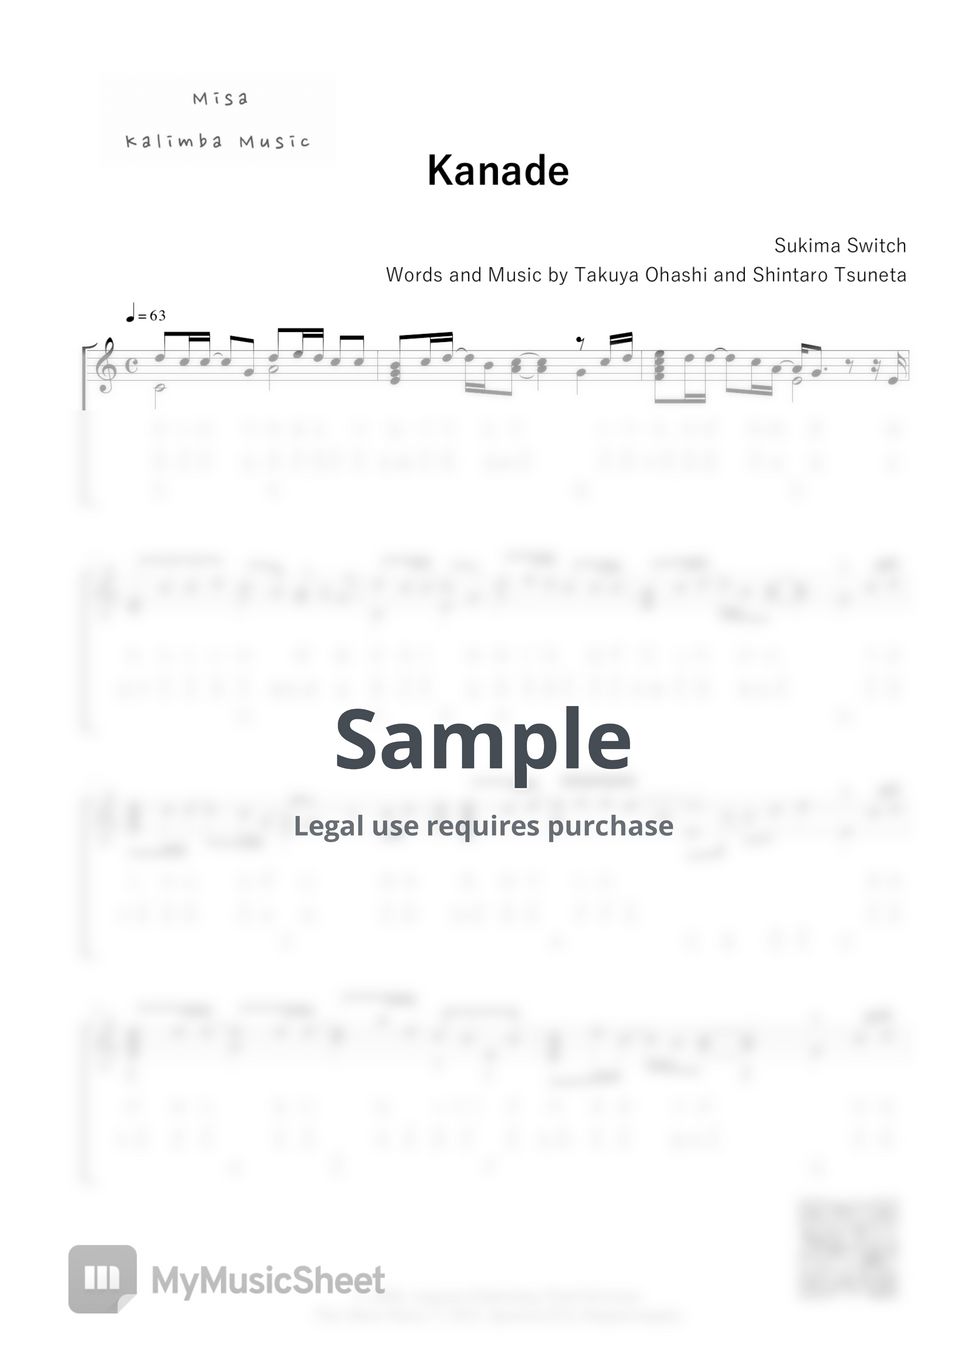 Sukima Switch - Kanade / Kalimba Tab /Letter Notation by Misa / Kalimba Music